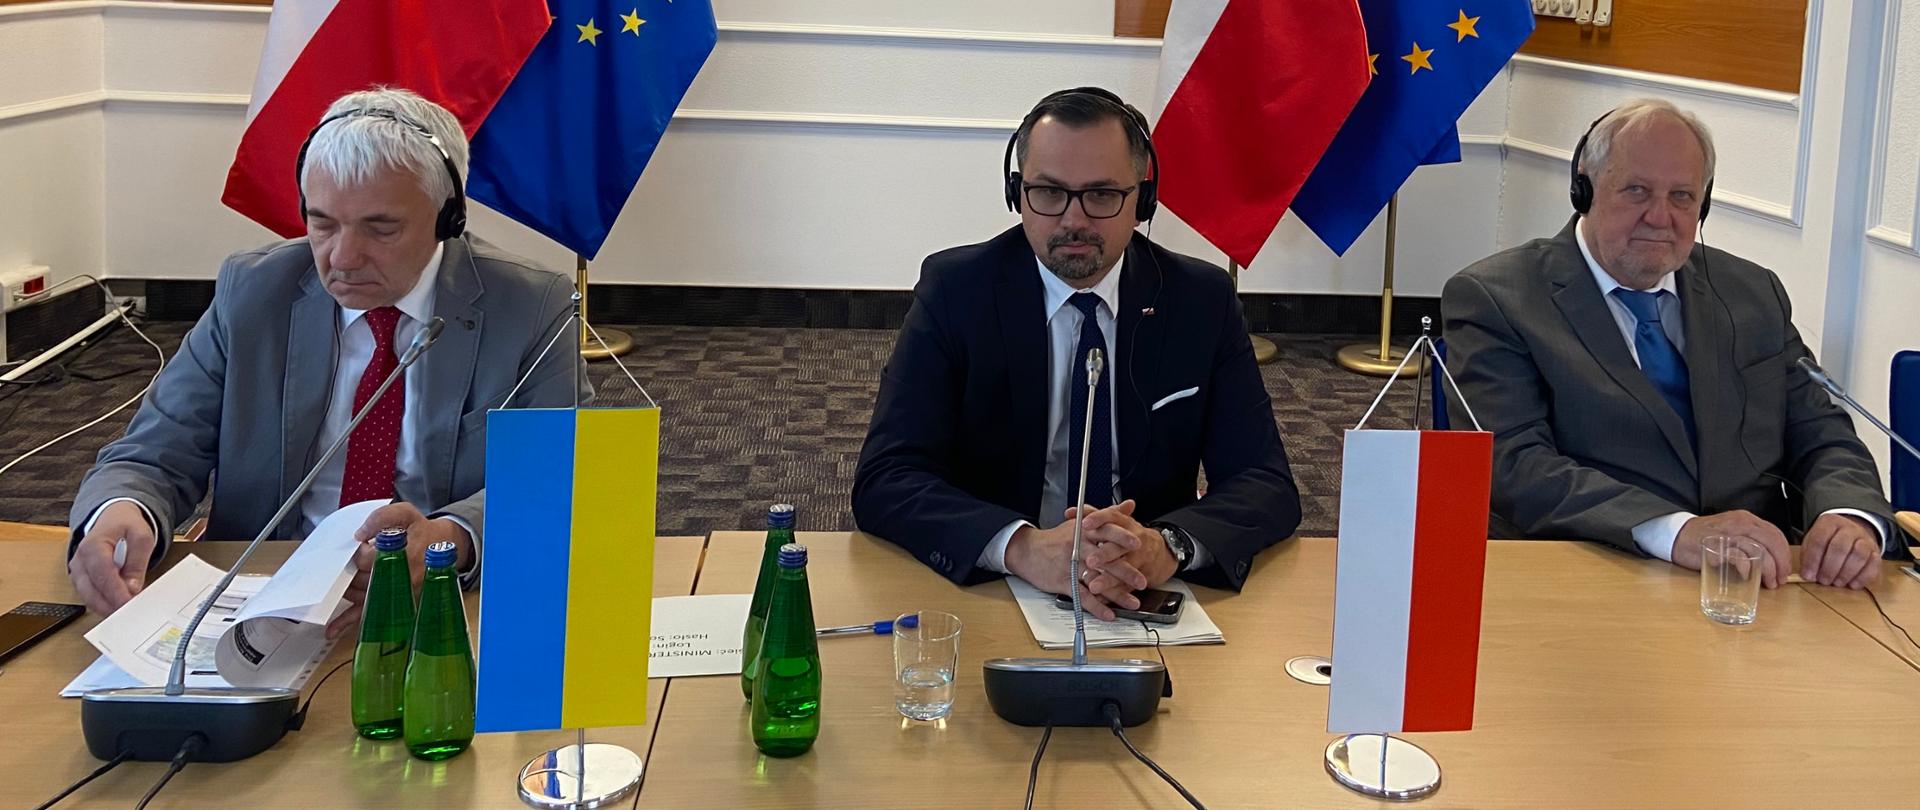 Grupa mężczyzn przy stole, na którym stoją proporczyki Polski i Ukrainy. Za nimi flagi PL i UE.